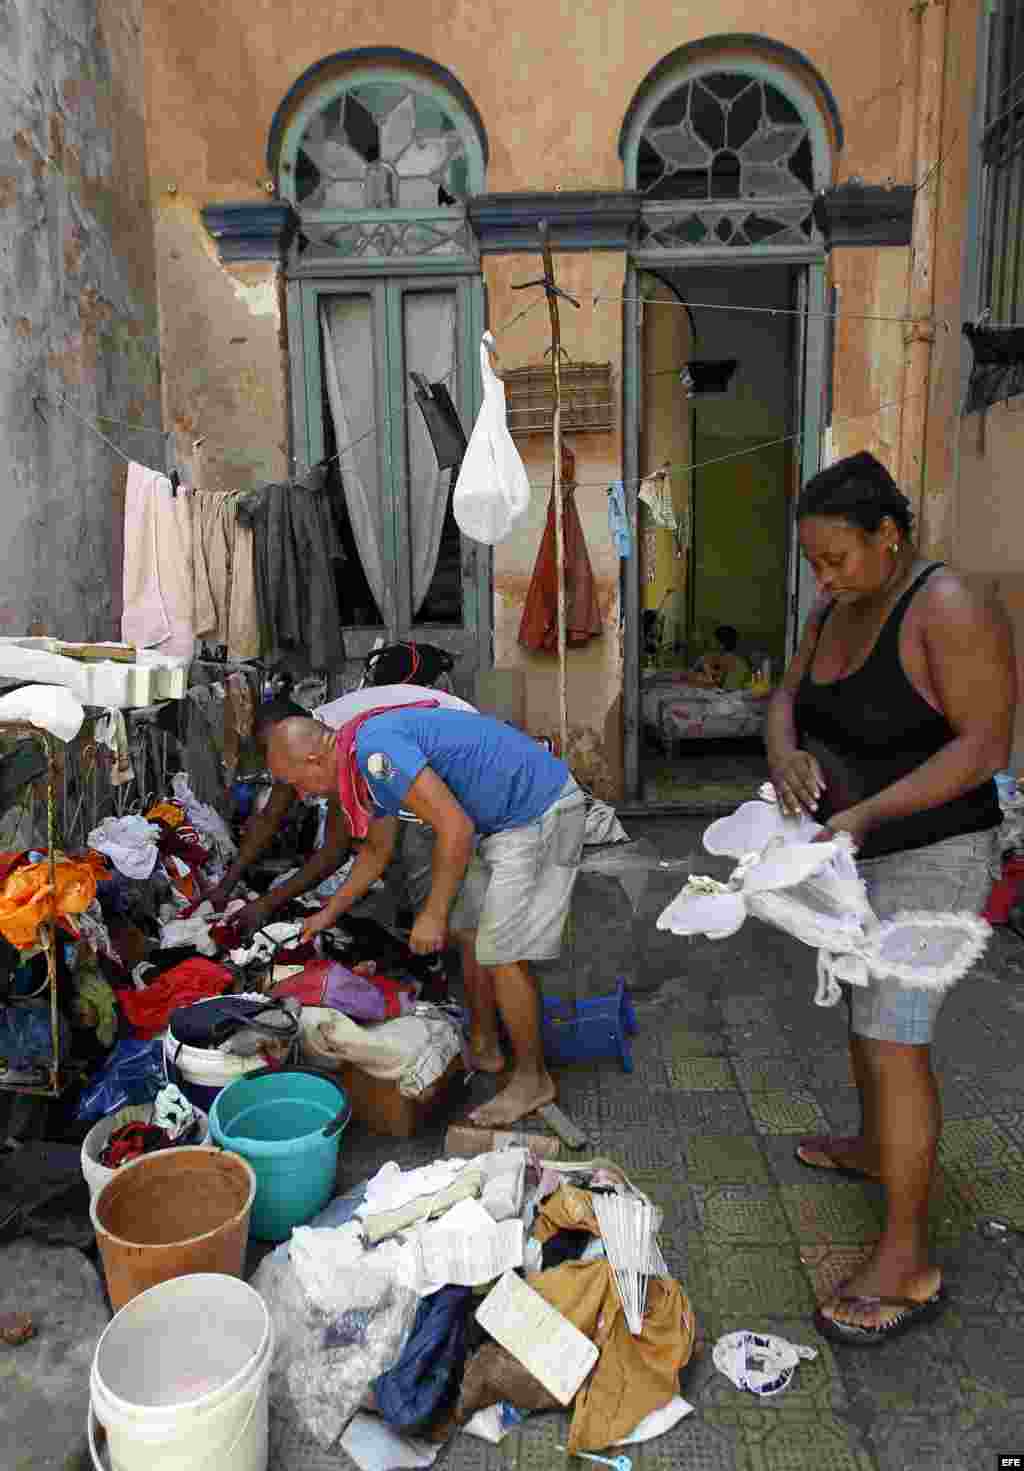 Varias personas sacan sus pertenencias fuera de las casa para que les de el sol hoy, lunes 11 de septiembre del 2017, después del paso del huracán Irma por La Habana (Cuba). Al menos 10 personas han muerto en Cuba como consecuencia de los efectos del hura